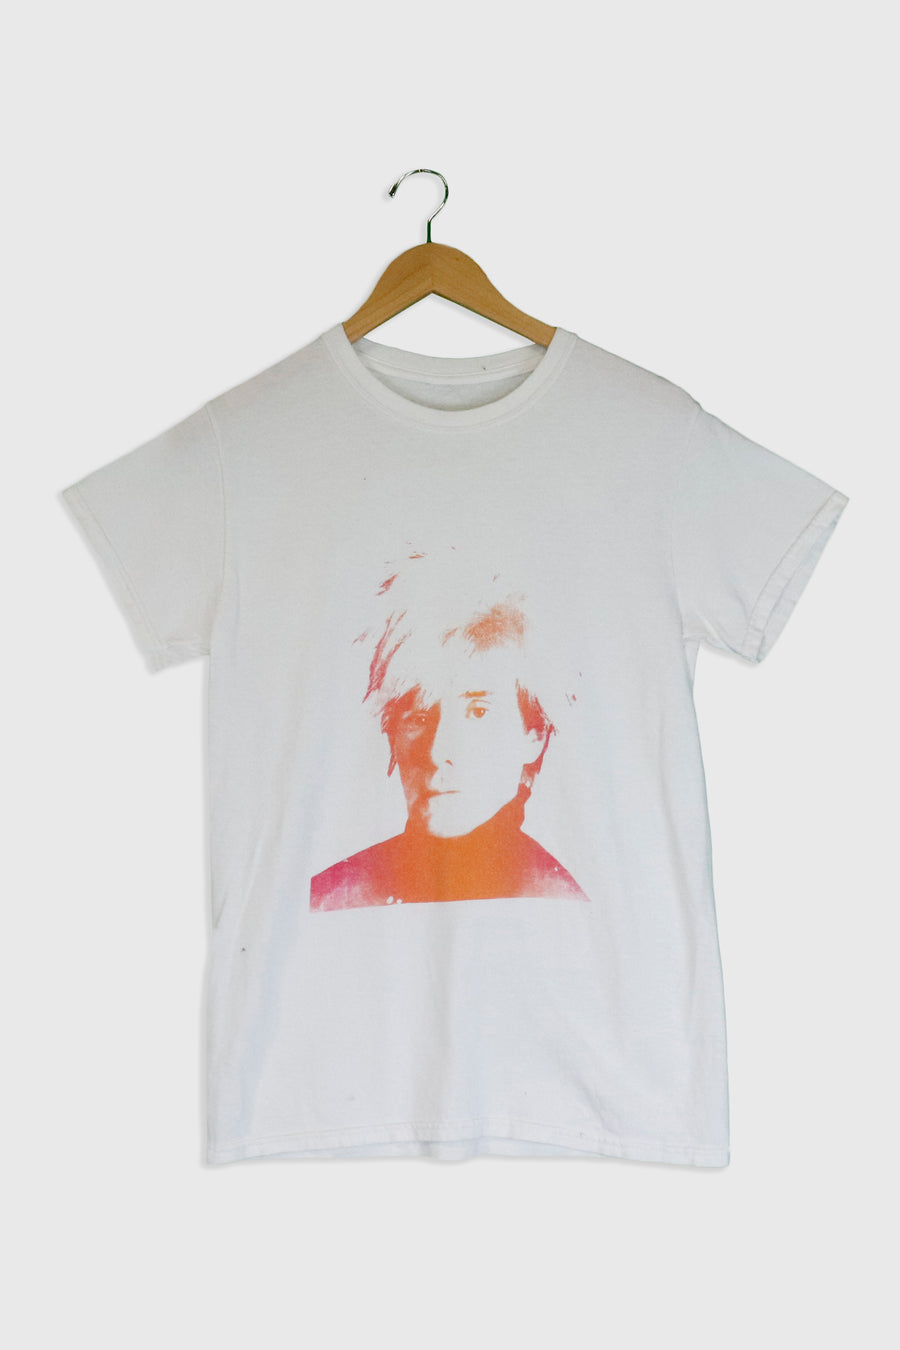 Vintage Andy Warhol Portrait Graphic T Shirt Sz S